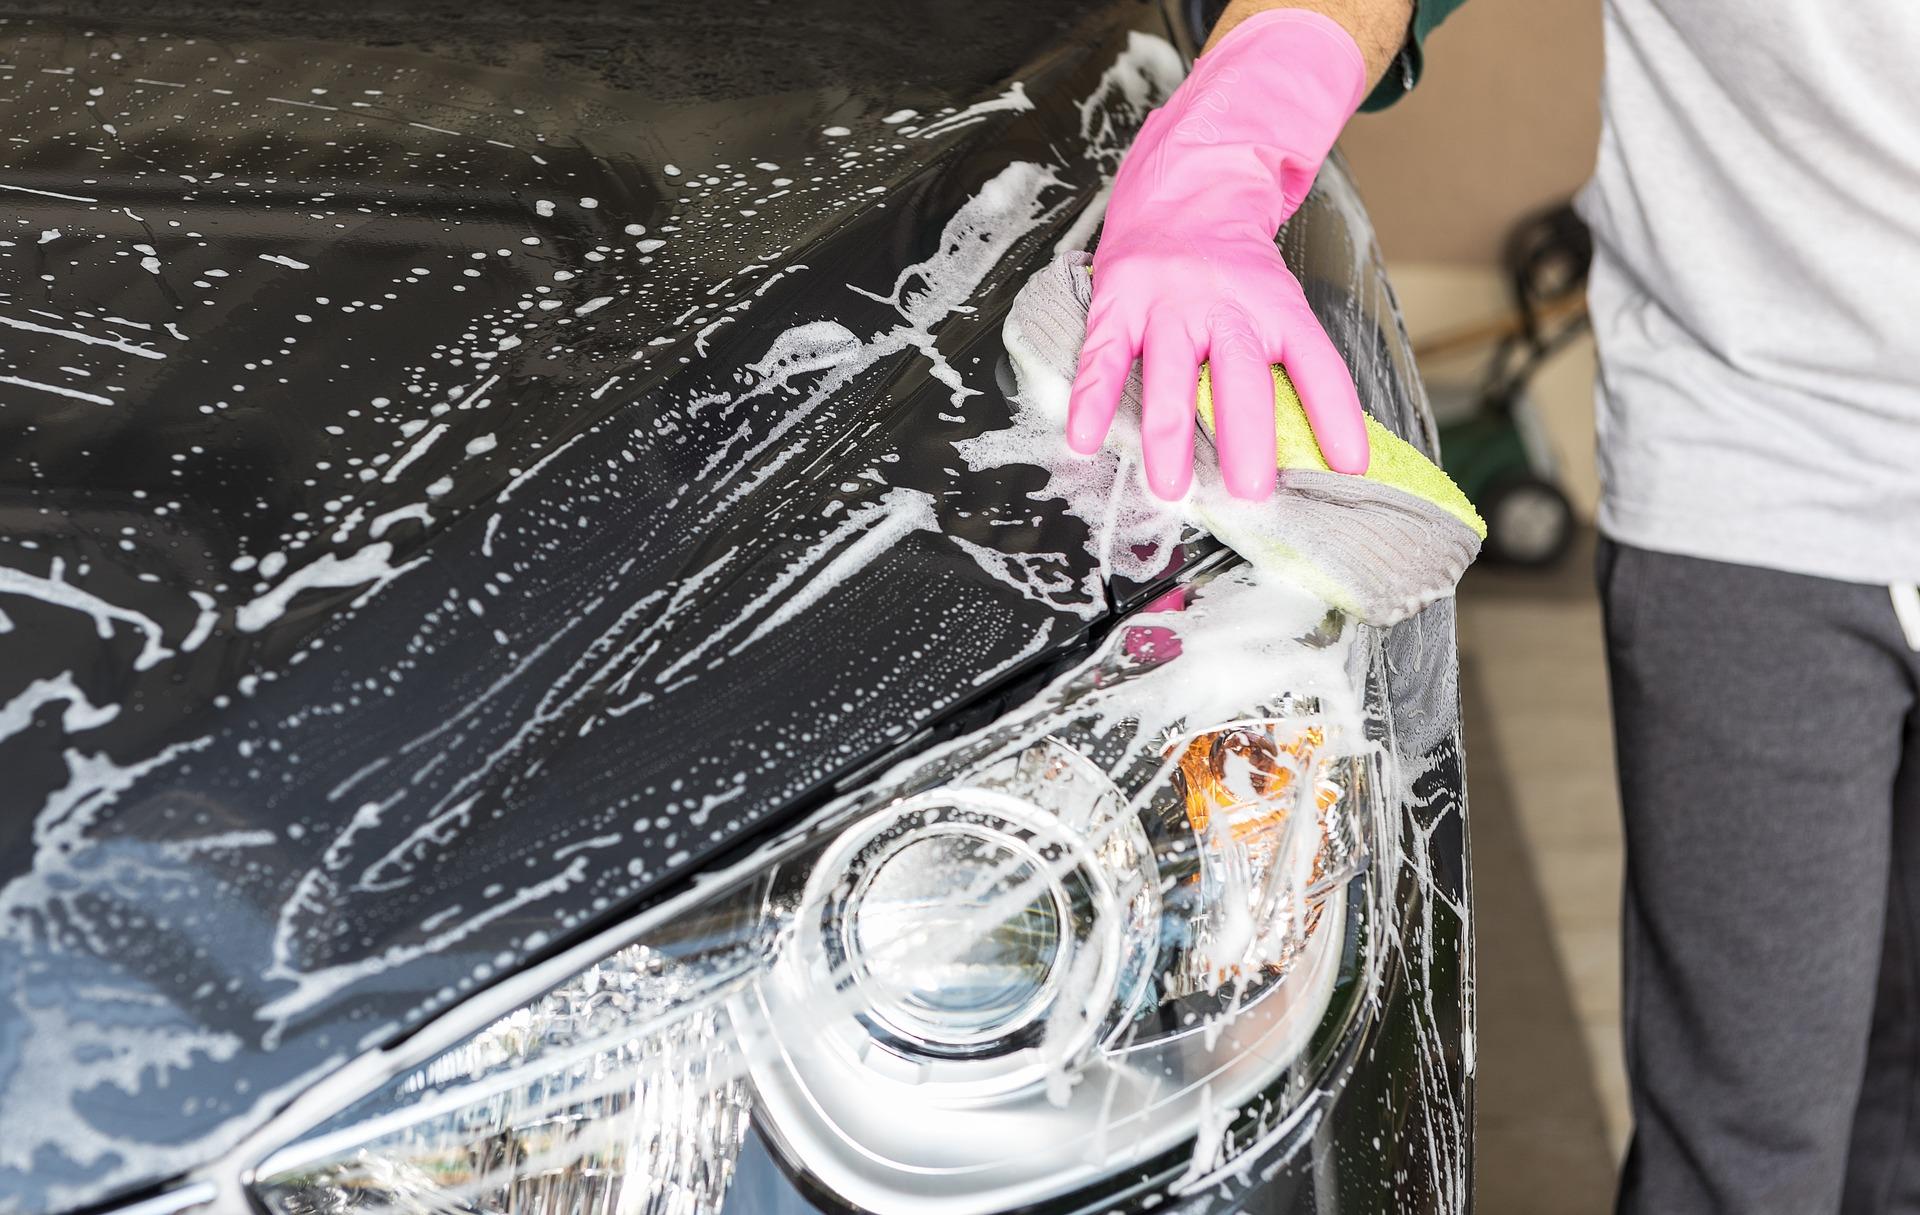 Chyby při mytí automobilu